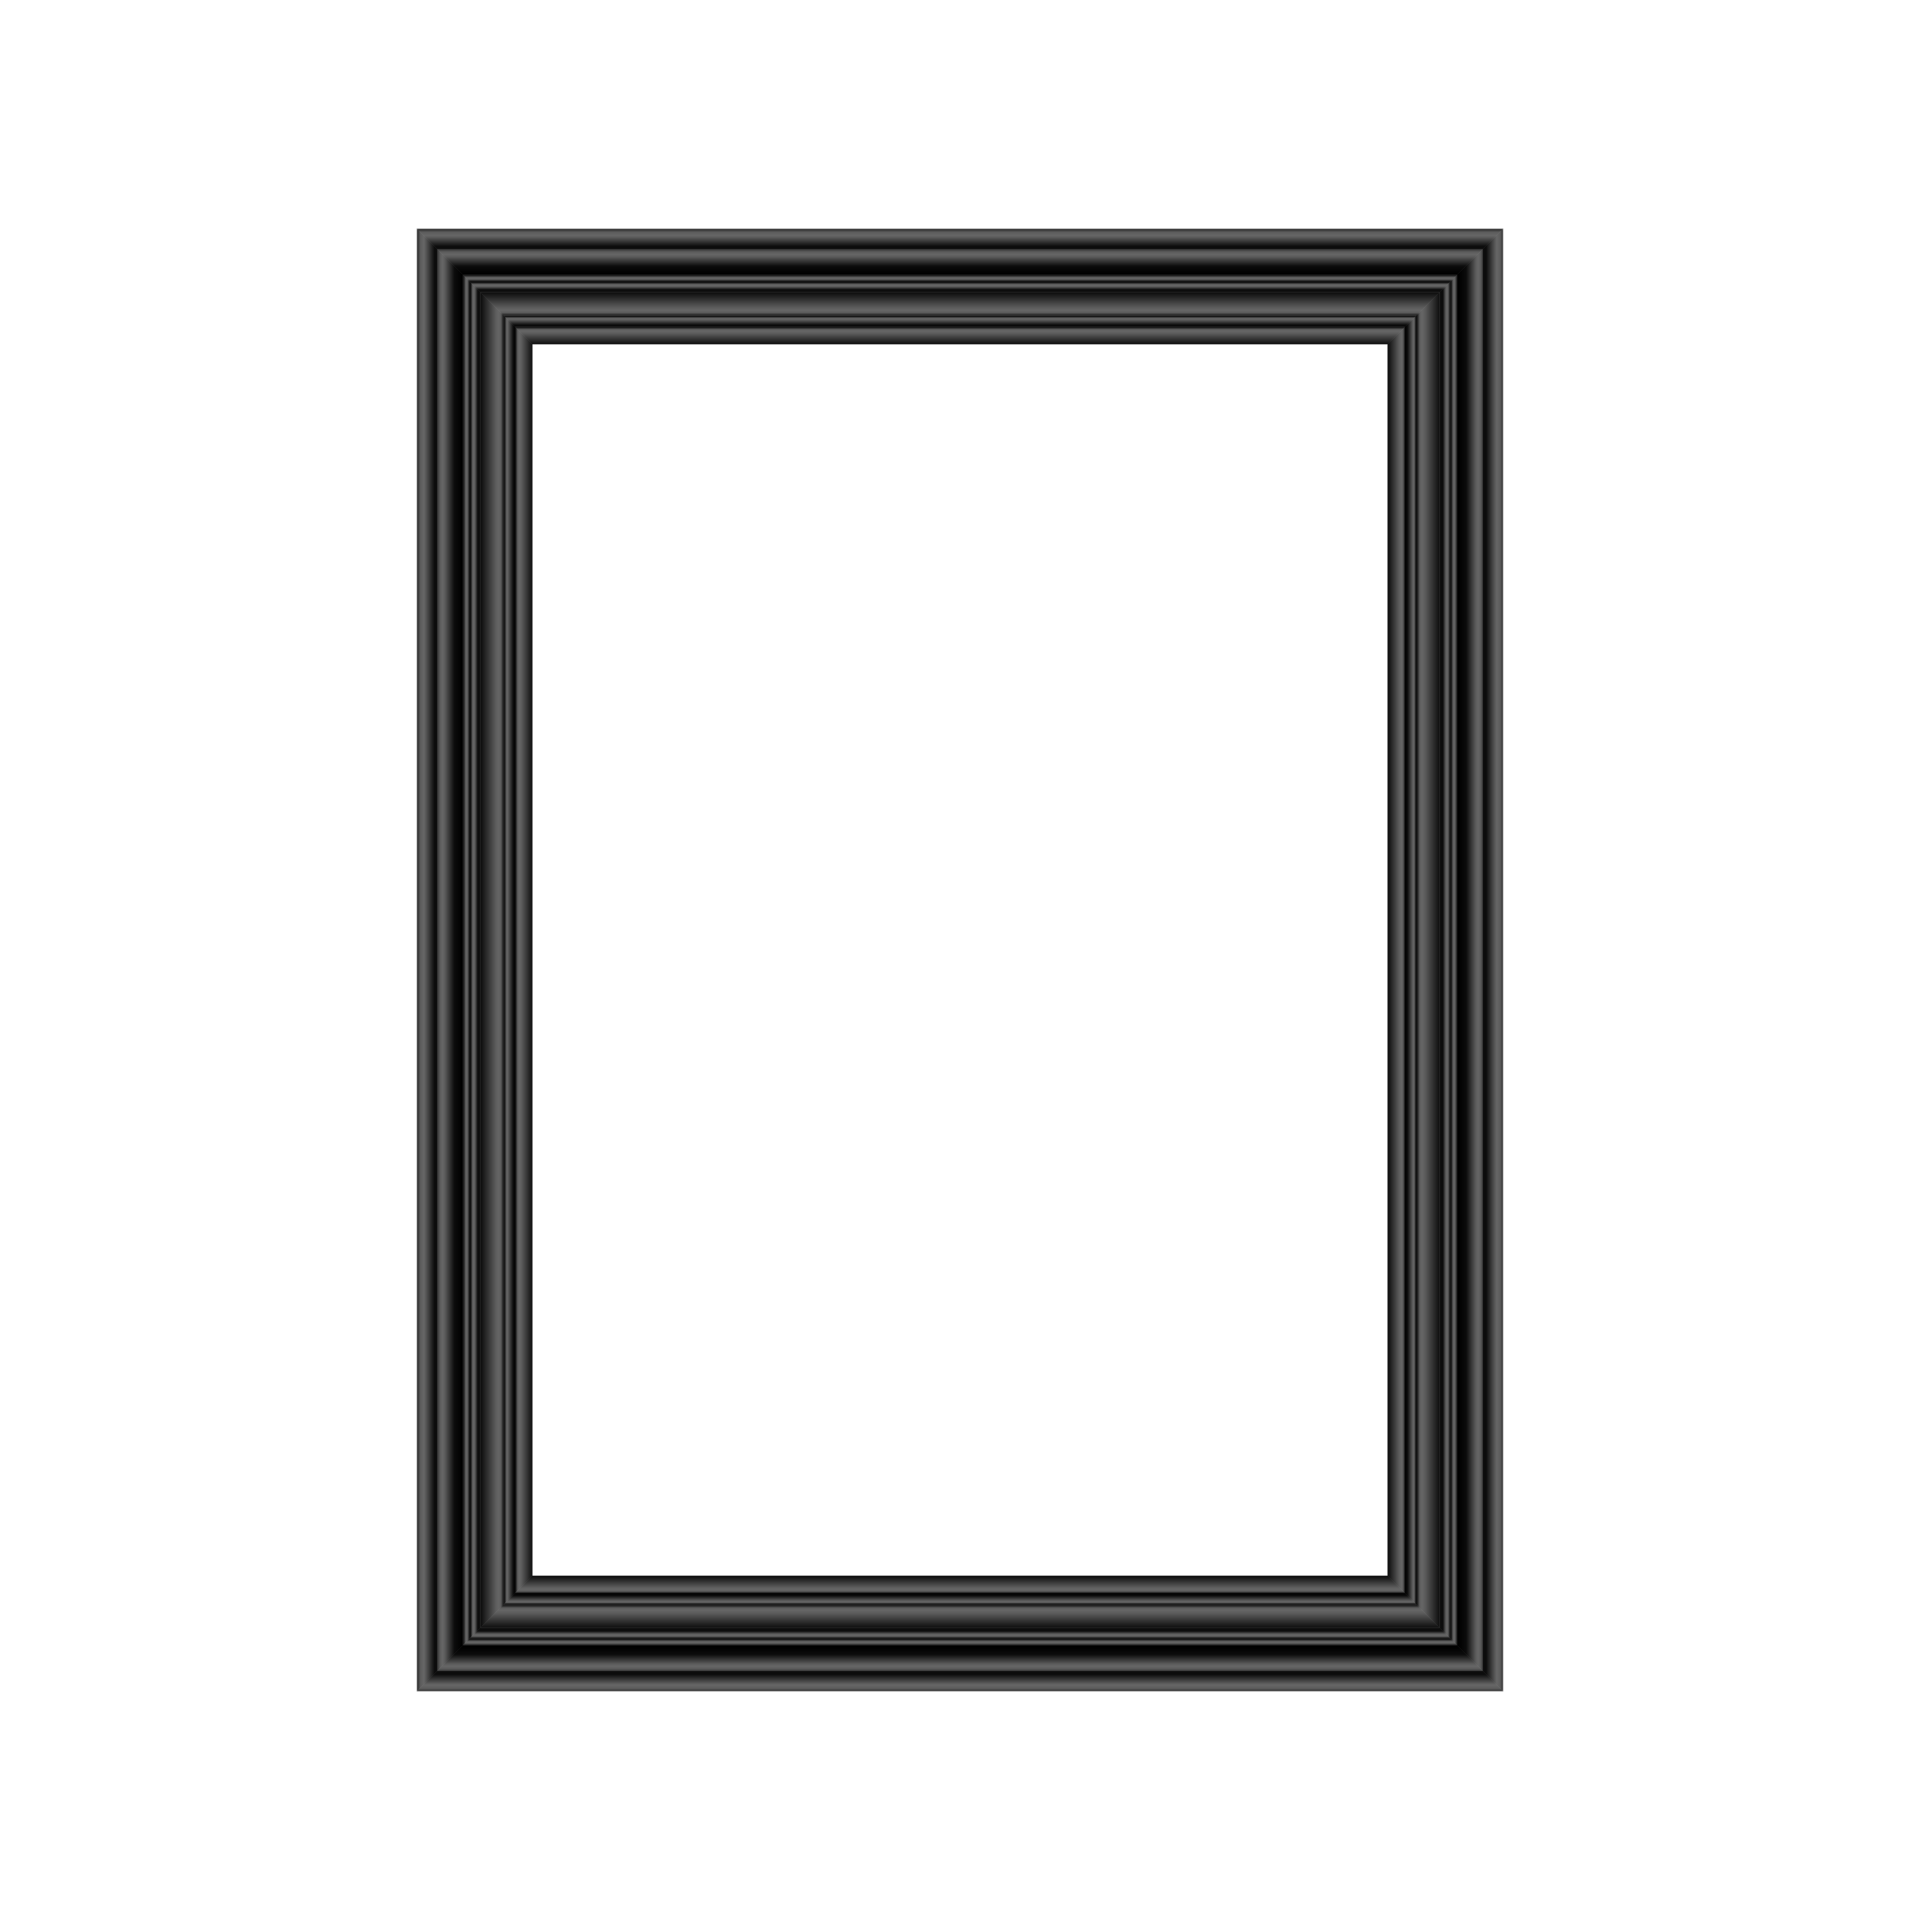 Khung đen PNG là một công cụ hỗ trợ tuyệt vời để bạn ghép ảnh một cách chuyên nghiệp. Với khung đen này, bạn có thể tạo ra những bức ảnh đẹp mắt và đặc biệt hơn nữa là không cần phải lo lắng về việc phải cắt ảnh chỉ để trang trí. Hãy cùng xem những hình ảnh đẹp với khung đen PNG tại đây.